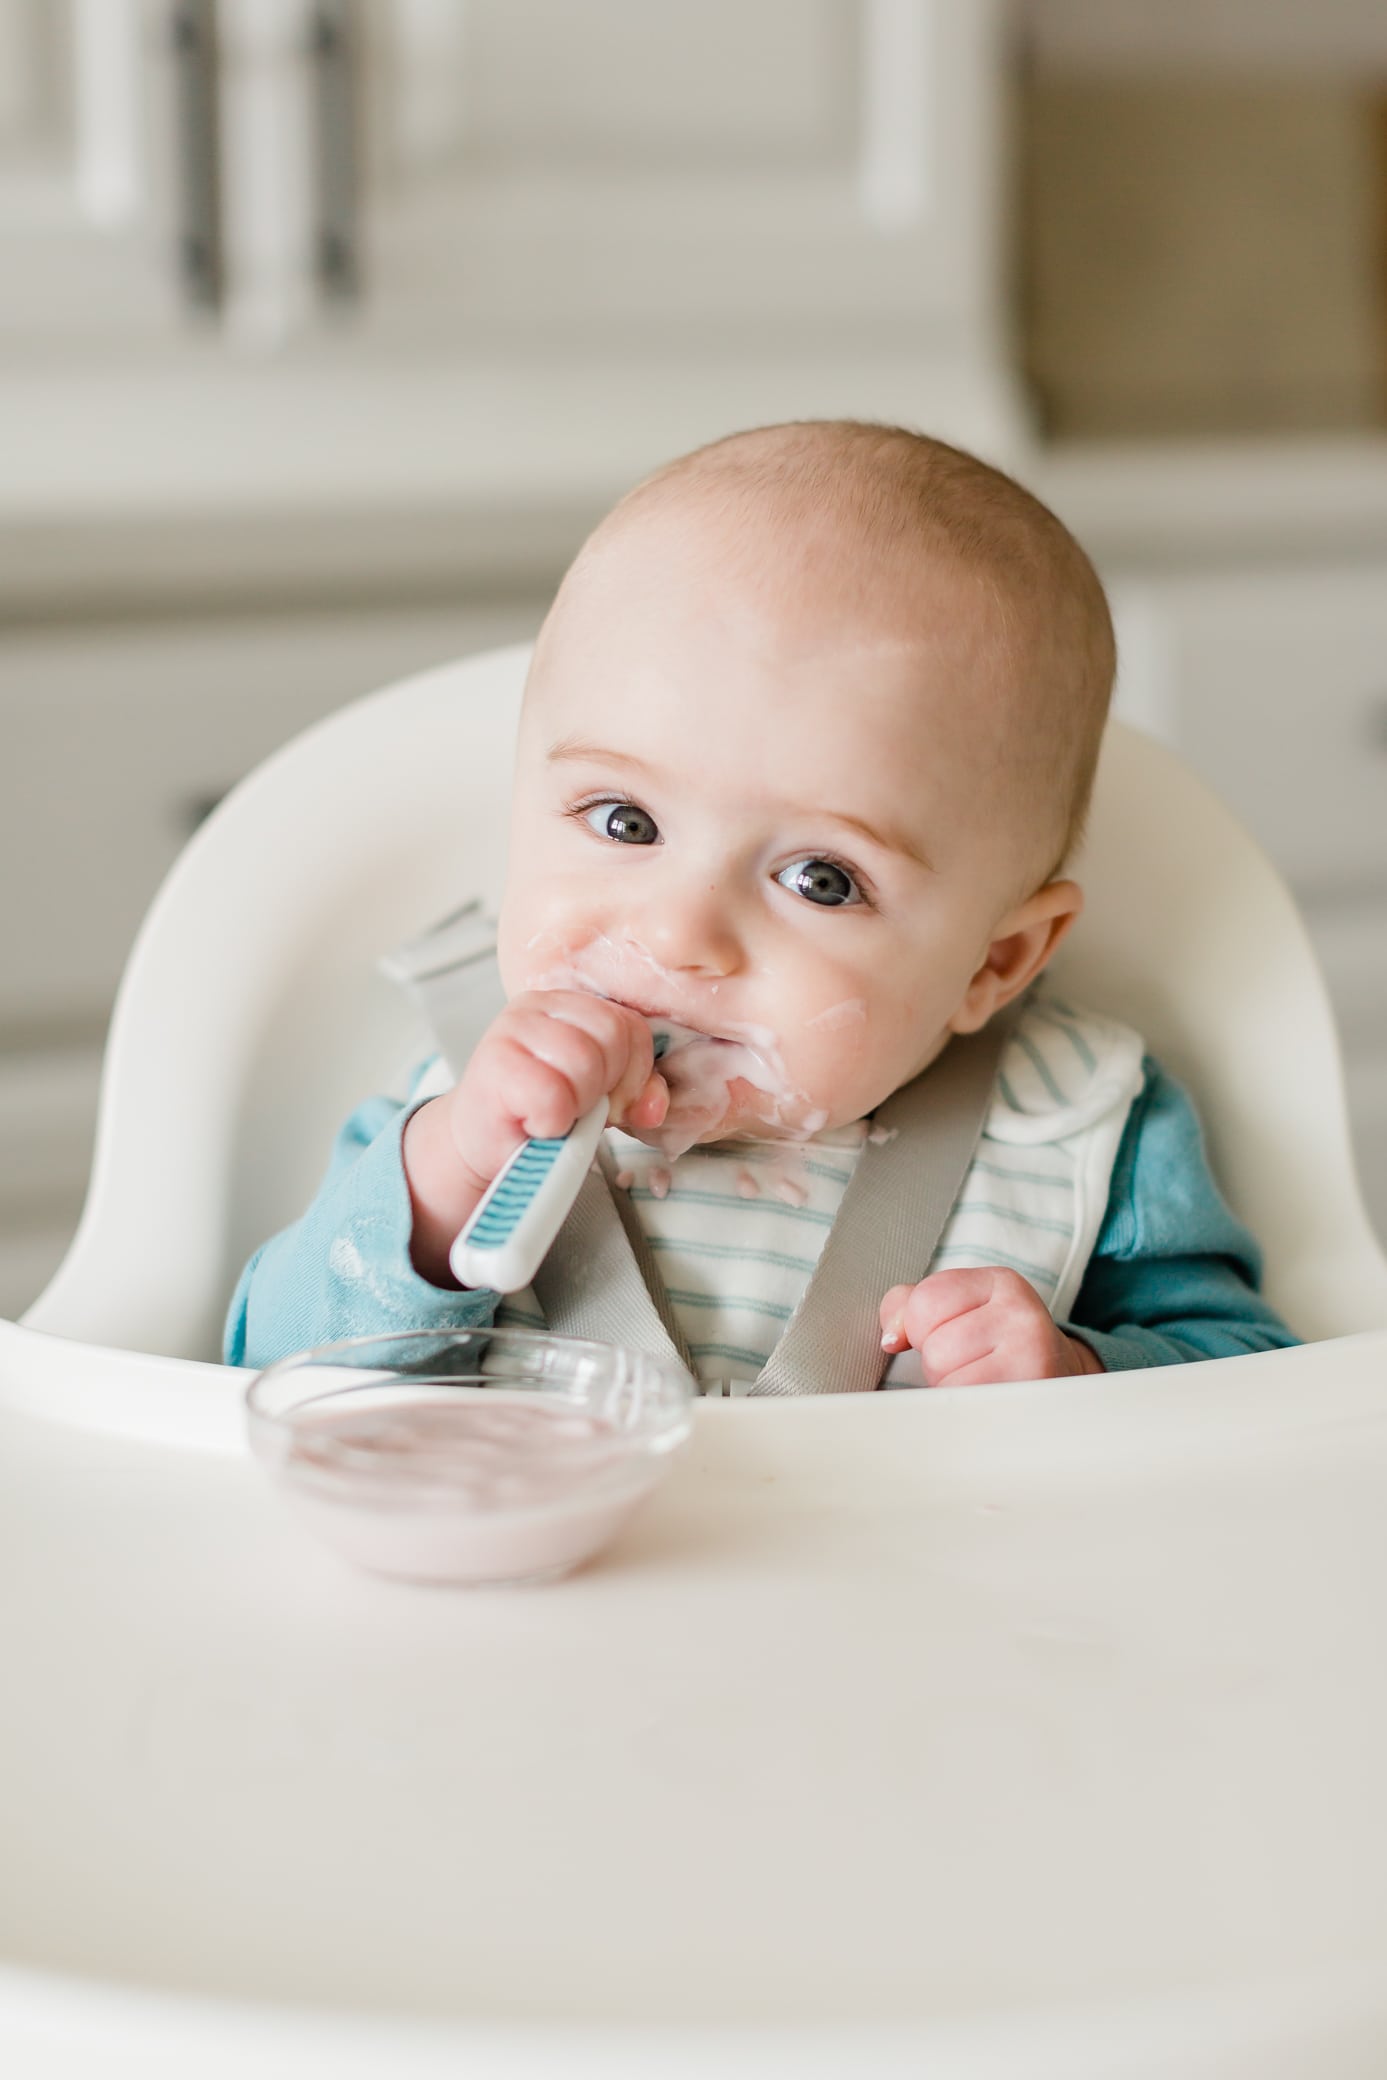 Baby boy sitting in a high chair eating yogurt.